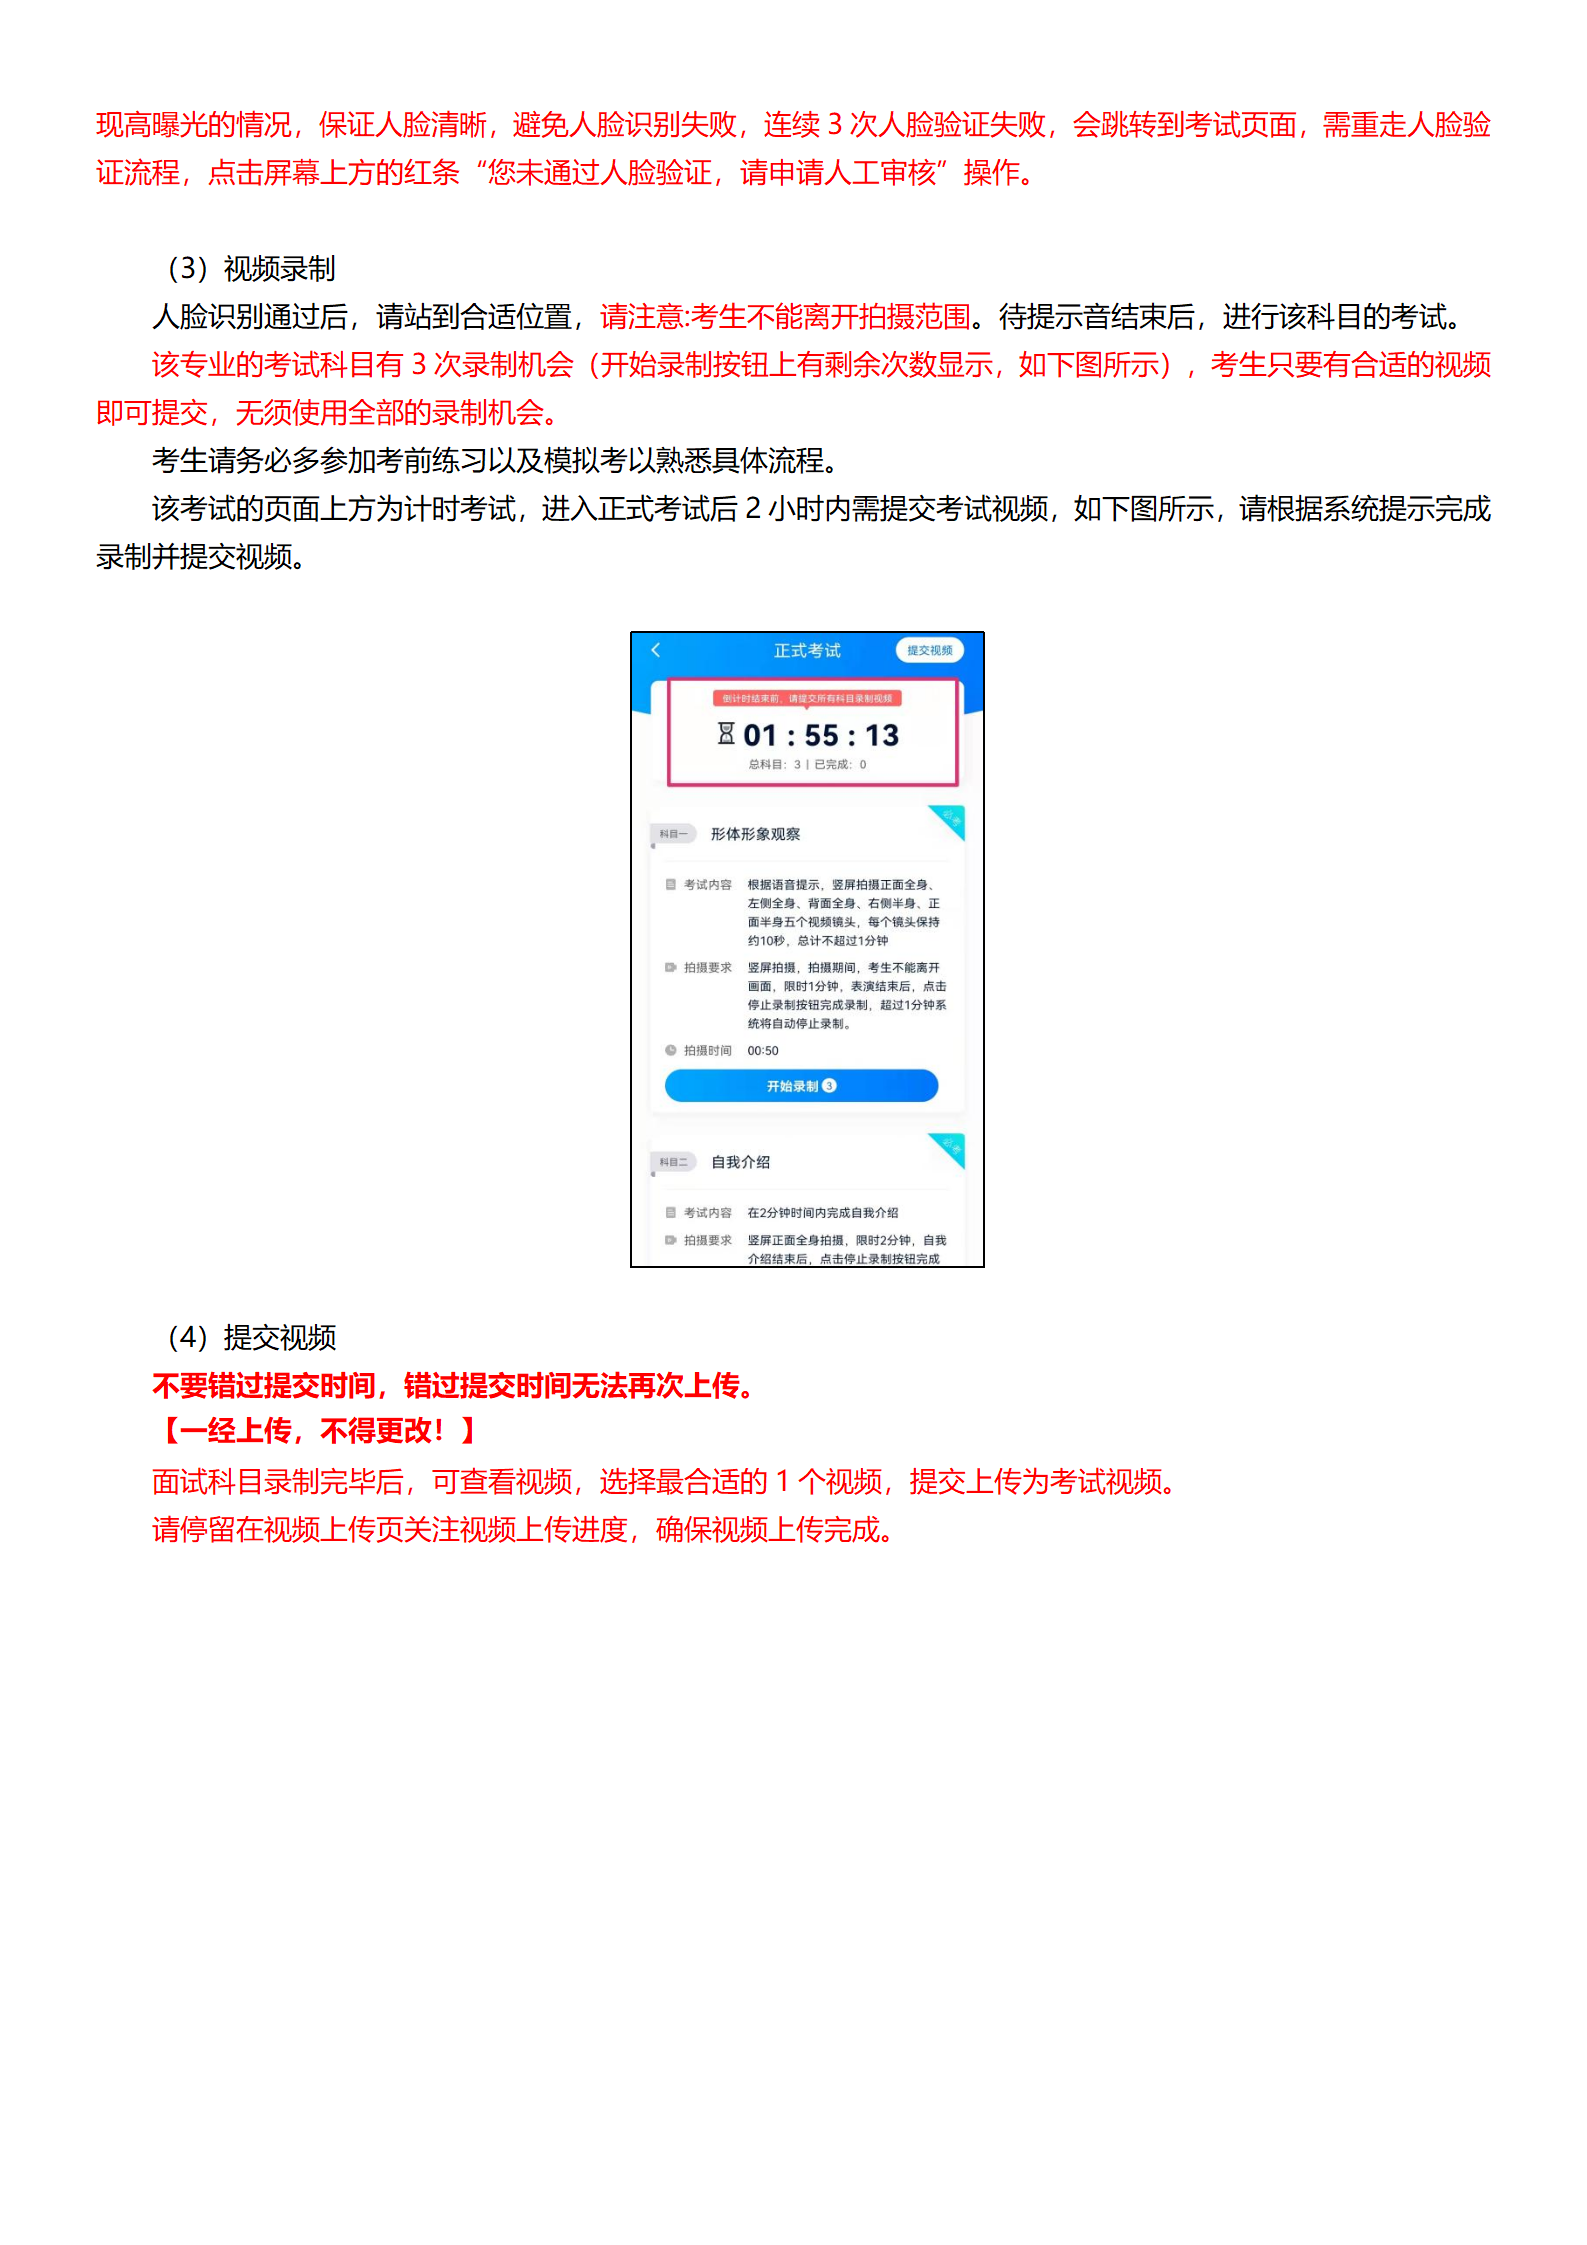 附件1：深圳大学-小艺帮4.0用户操作手册_09.png